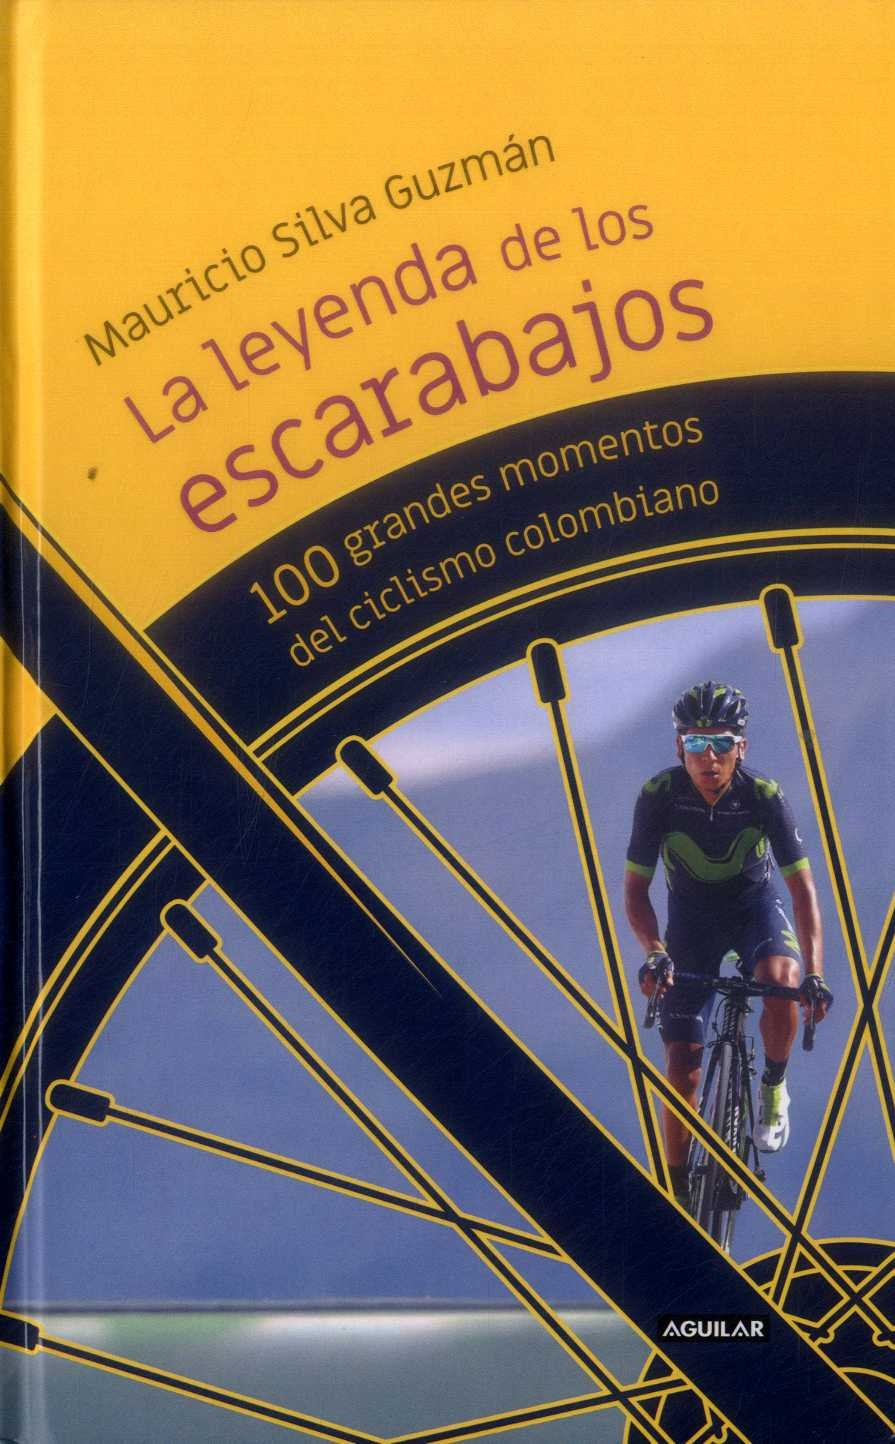 Imagen La Leyenda de los escarabajos: 100 momentos del ciclismo colombiano/ Mauricio Silva Guzmán